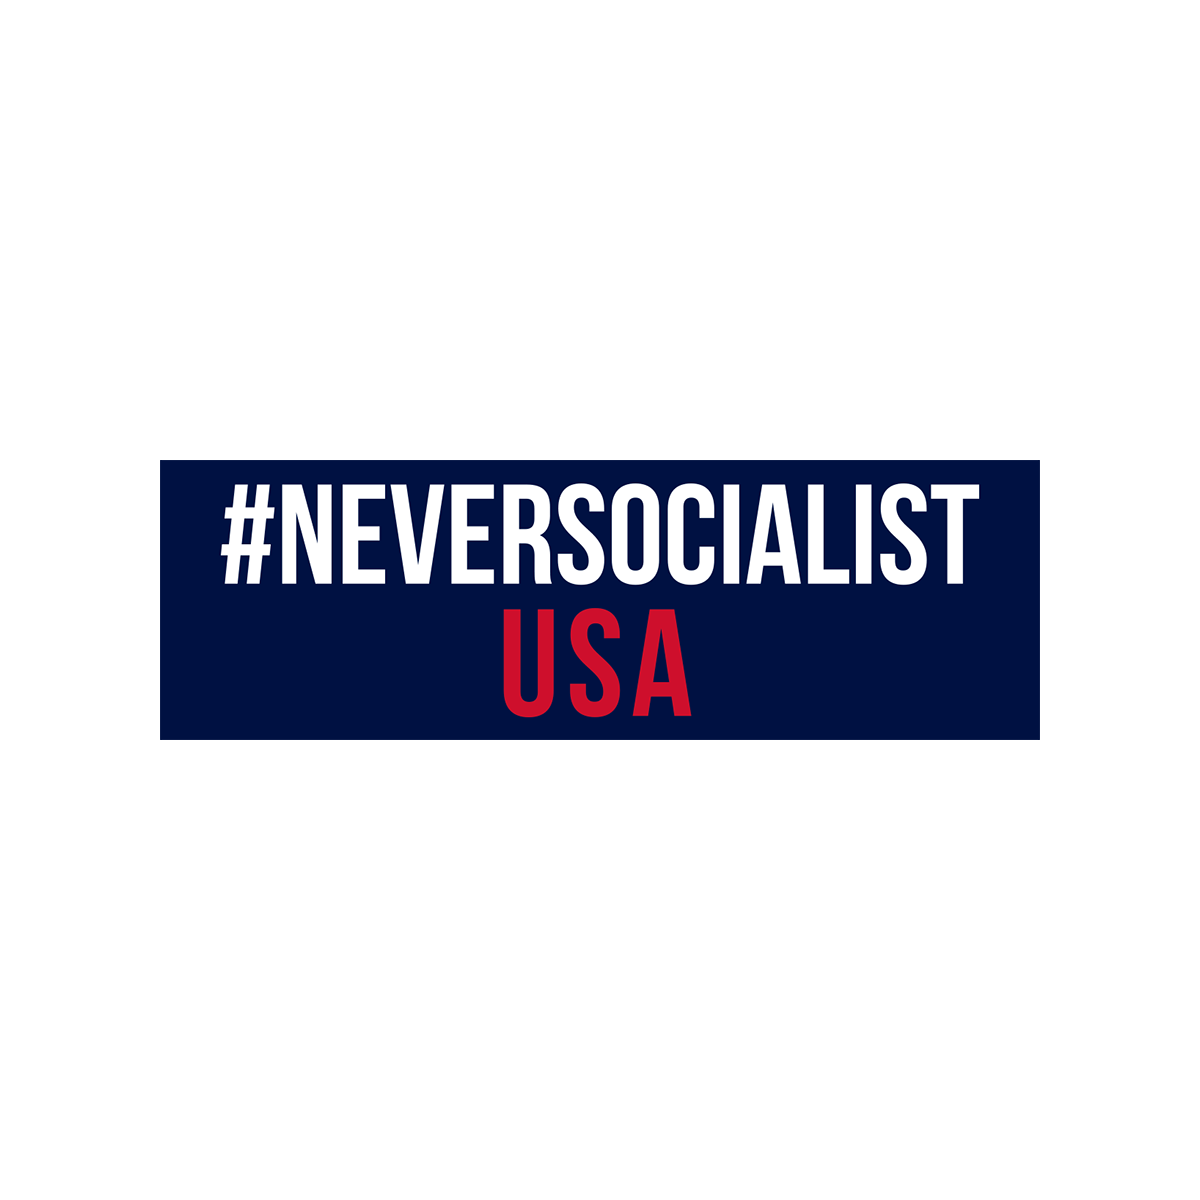 NeverSocialist USA Bumper Sticker Set of 2